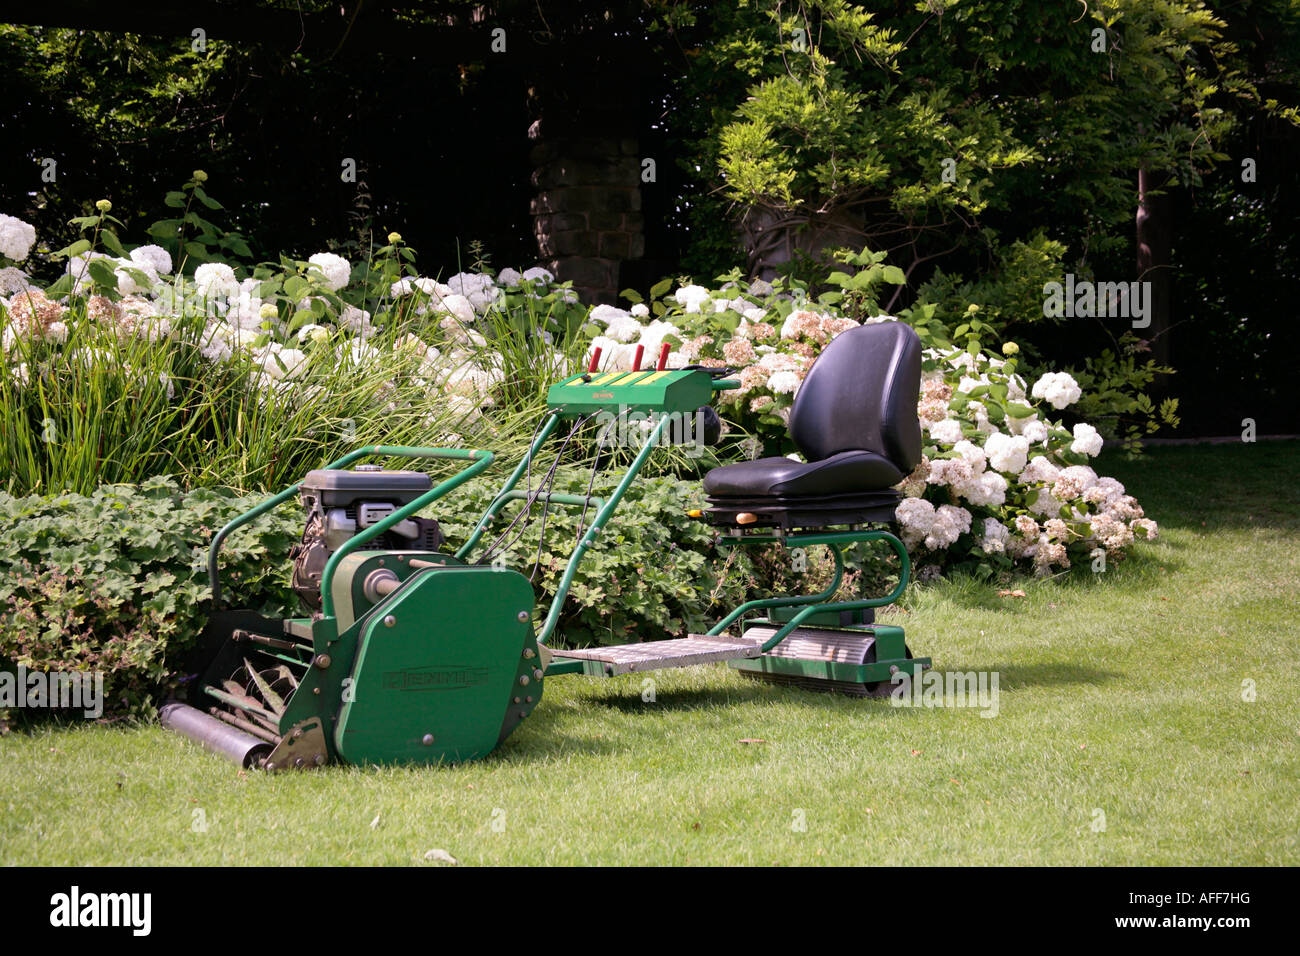 Ein Dennis fährt auf einem Rasenmäher in einem englischen Garten Stockfoto